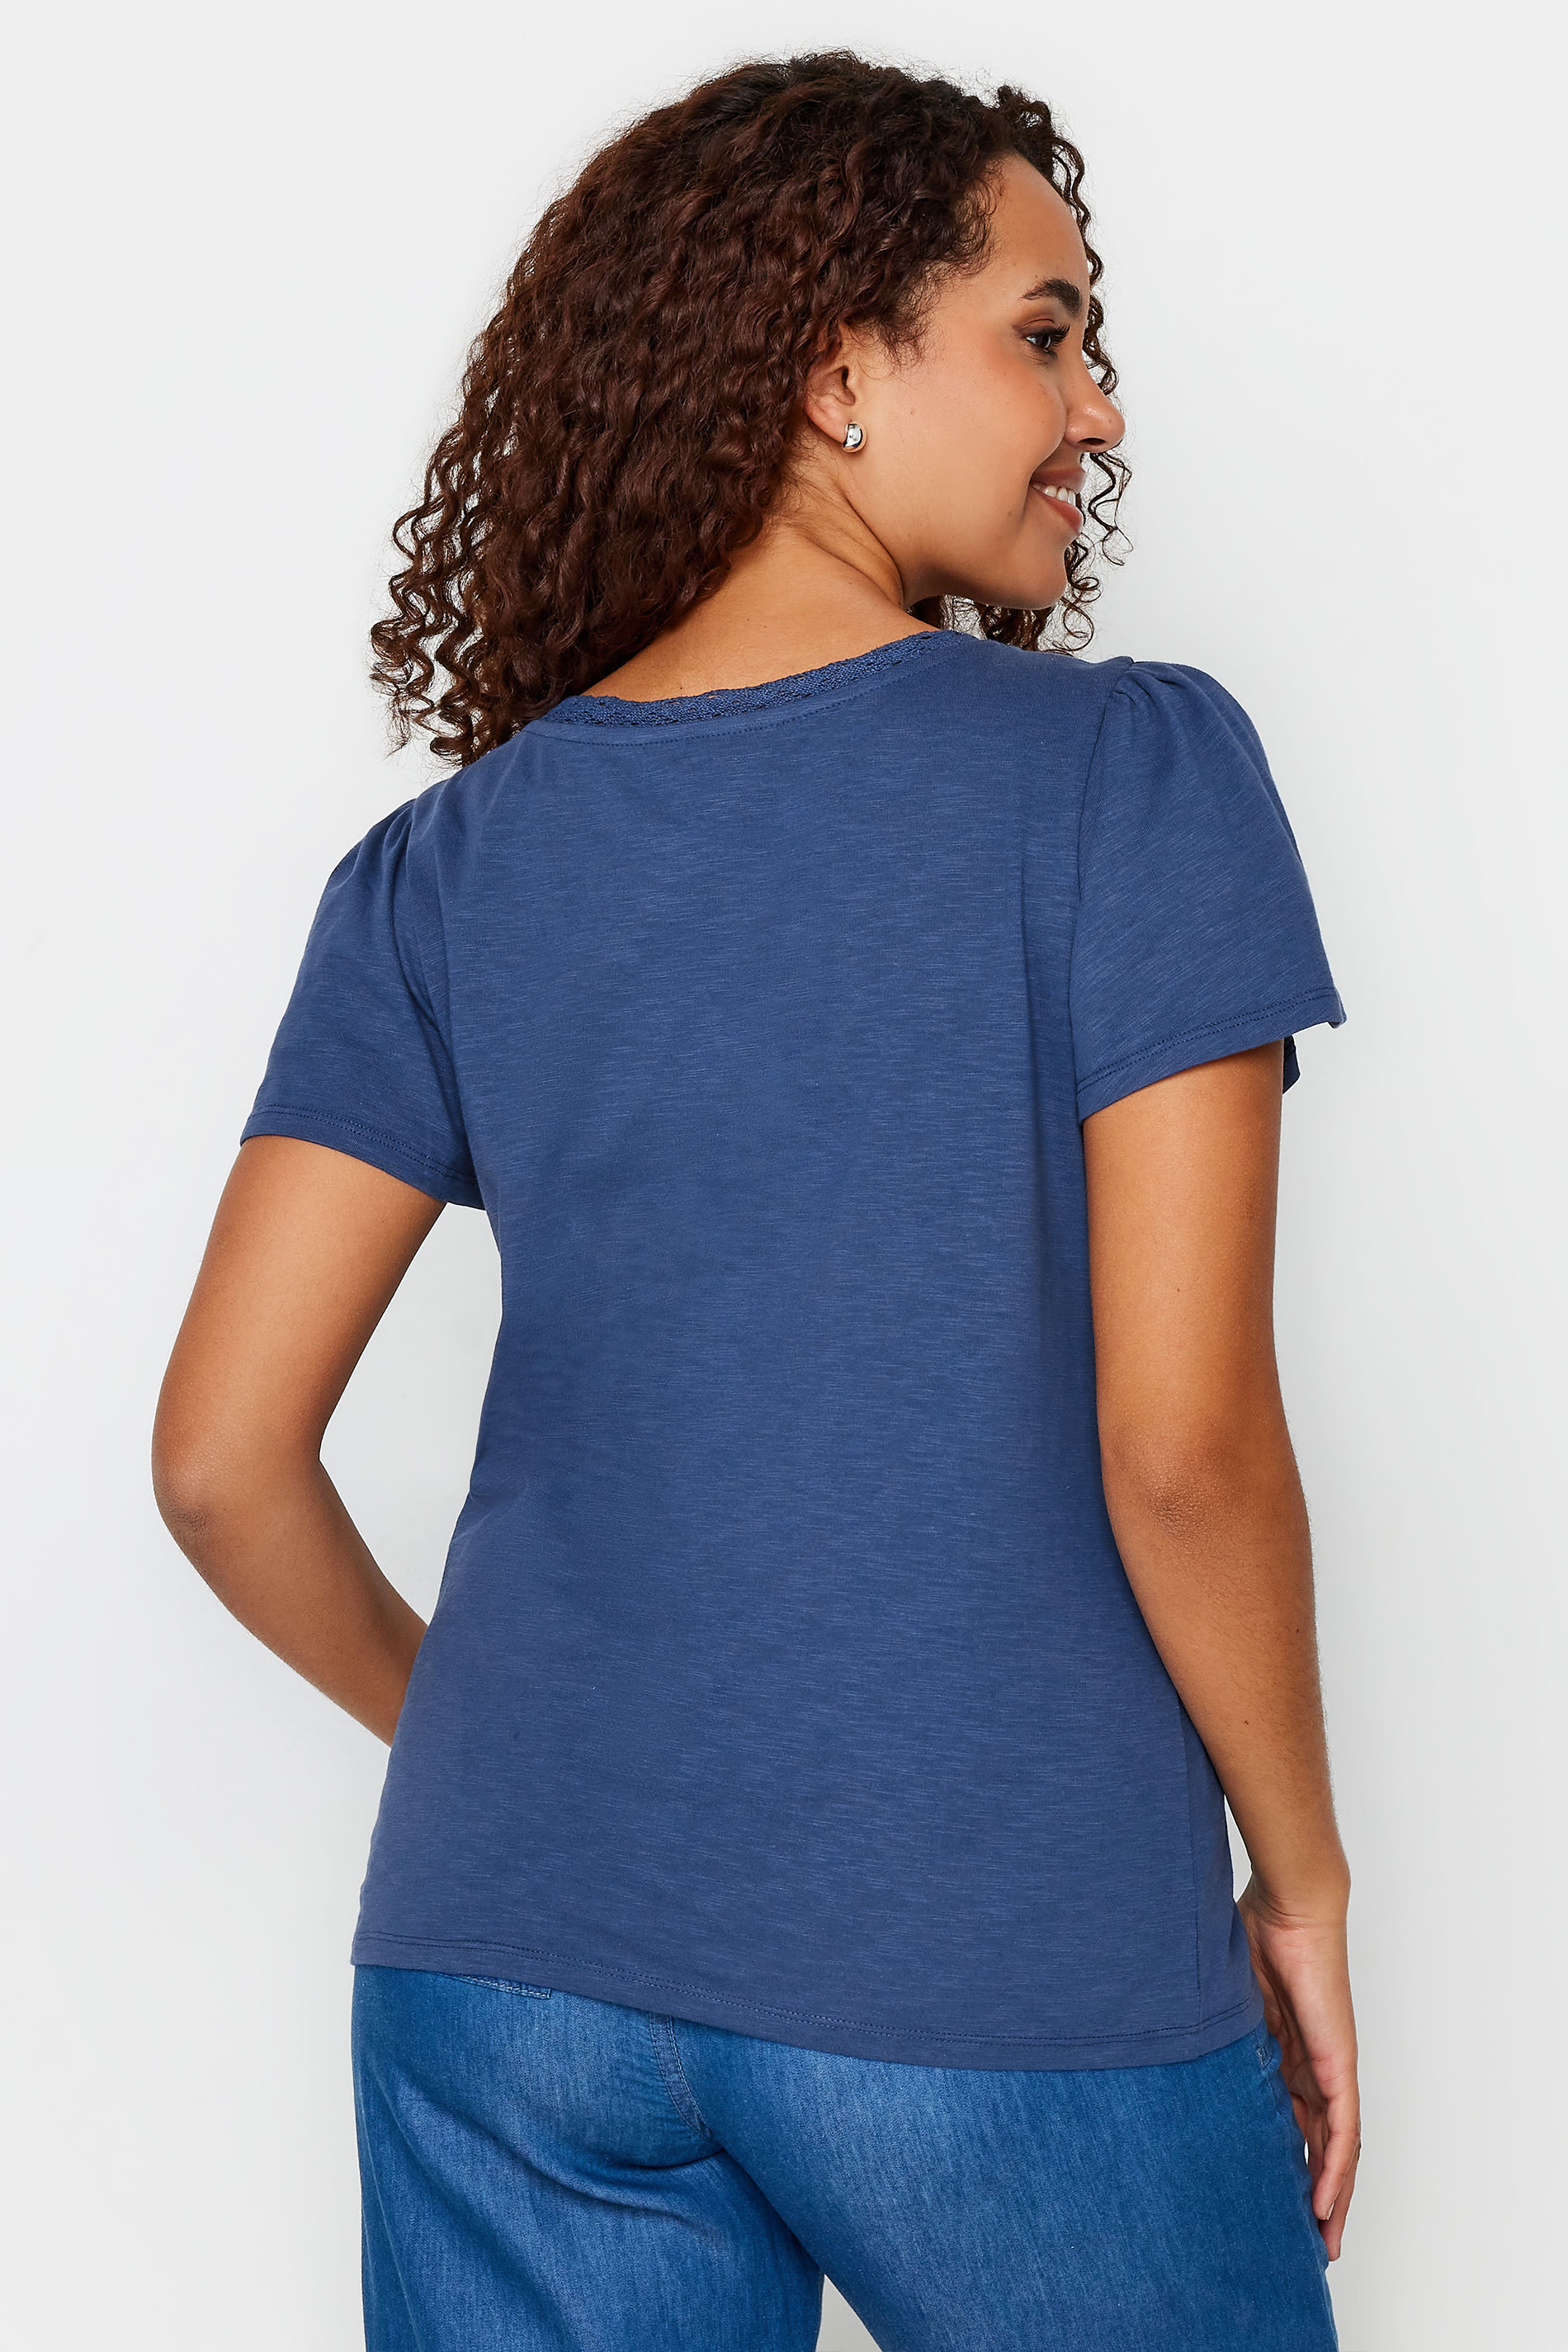 M&Co Navy Blue Lace Trim Short Sleeve V-Neck Cotton T-Shirt | M&Co 3